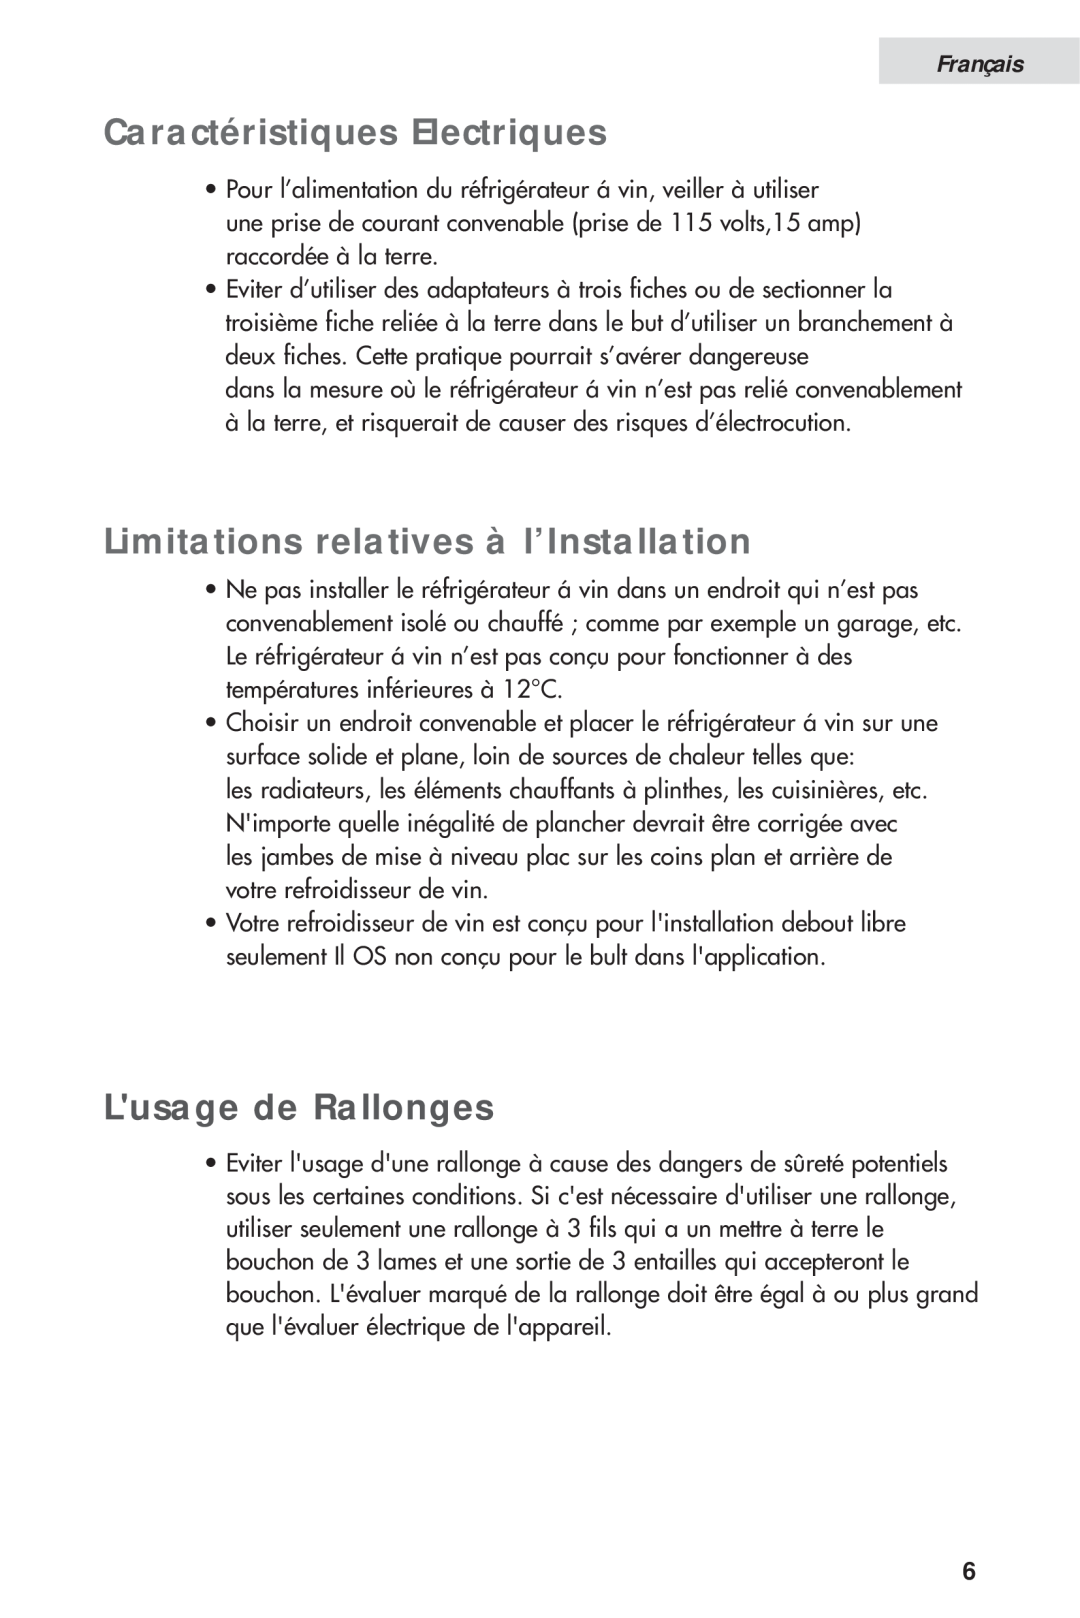 Haier HVH014A manual Caractéristiques Electriques, Limitations relatives à l’Installation, Lusage de Rallonges, Français 